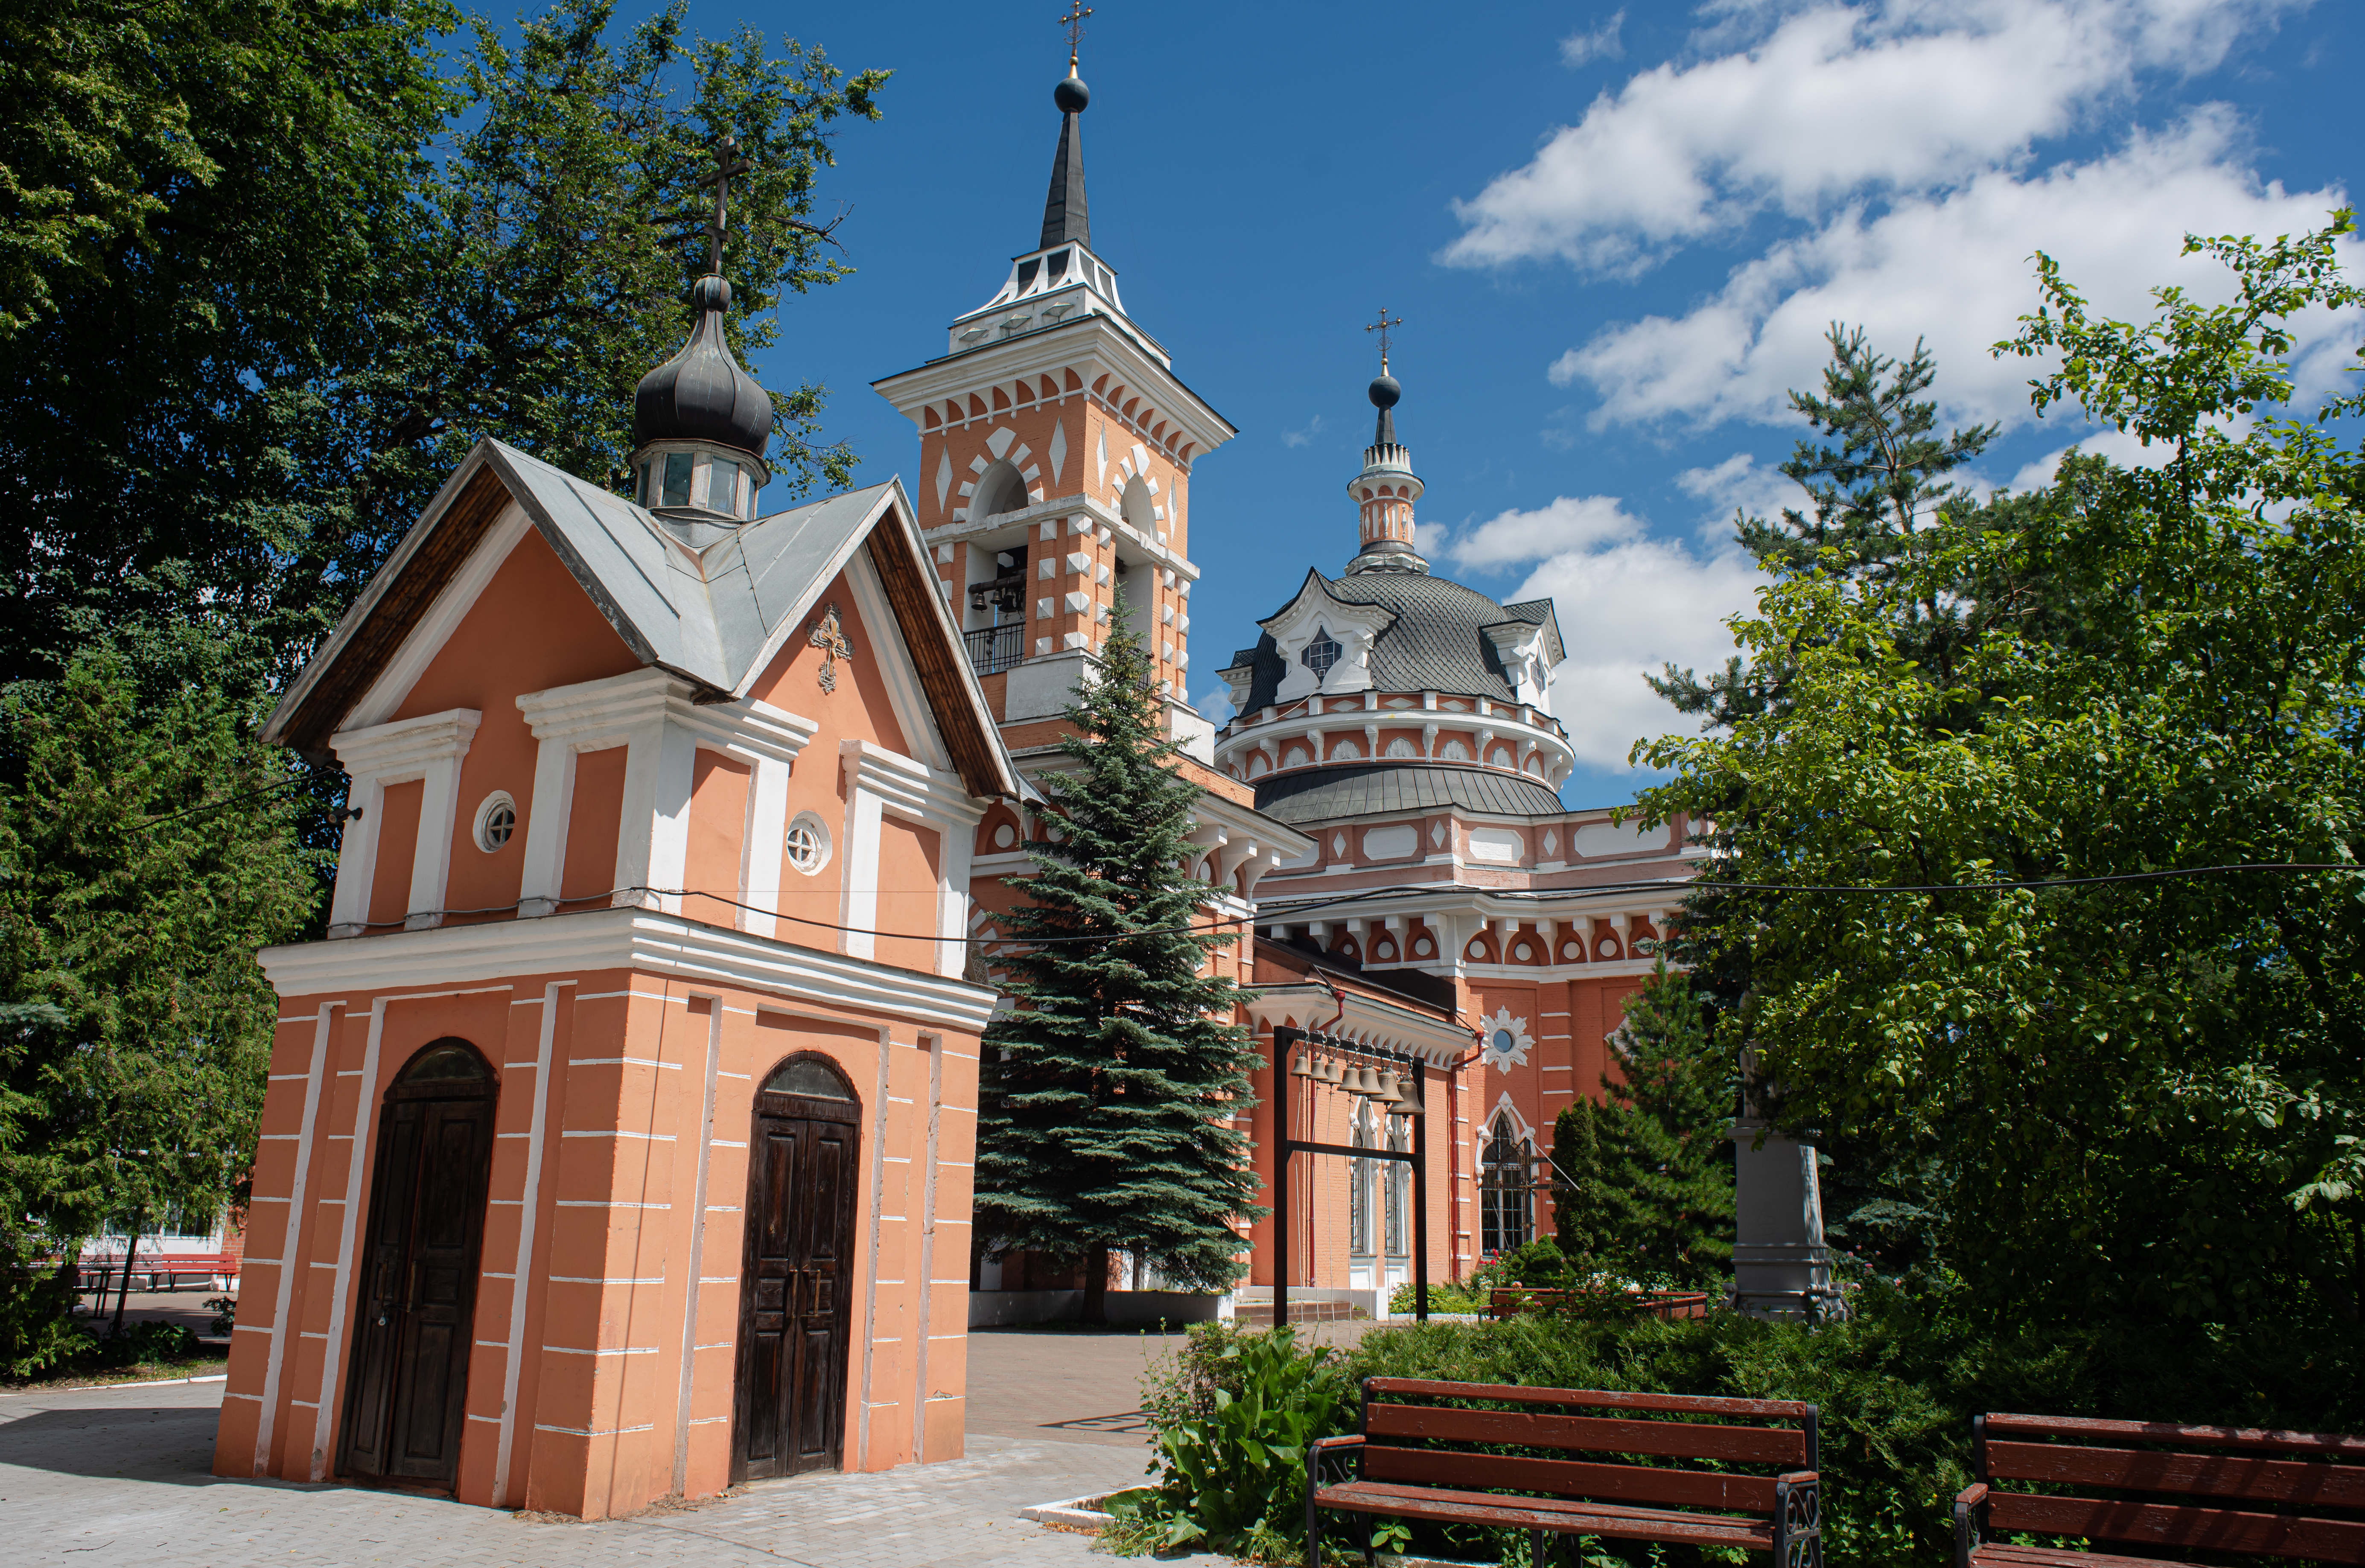 Здание из красного кирпича с богатым белокаменным убранством появилось на месте старого деревянного храма Казанской иконы Пресвятой Богородицы